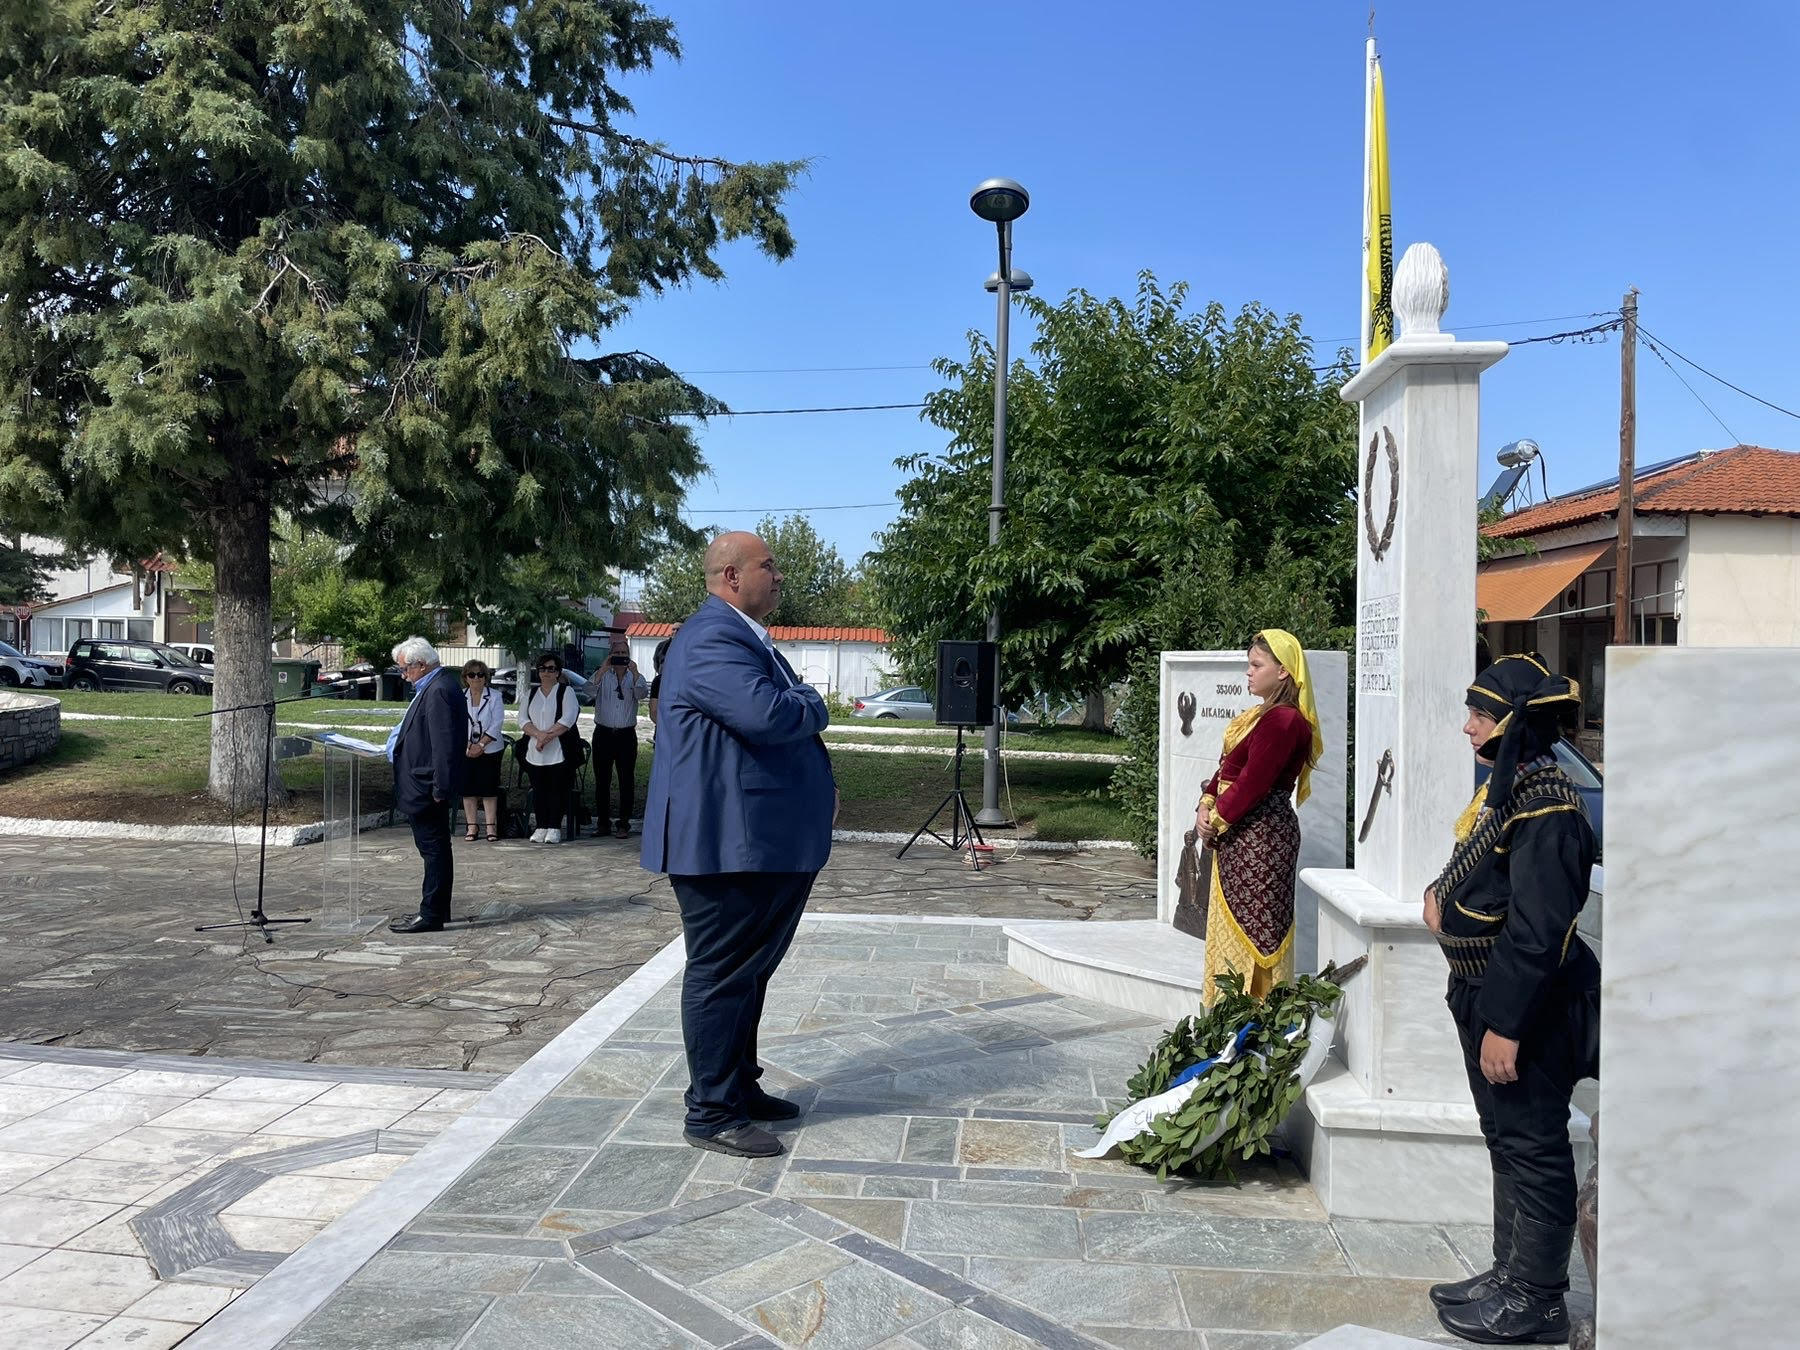 Παρουσία του Βουλευτή Γρεβενών Ιωάννη Γιάτσιου στην τελετή αποκαλυπτηρίων των Μνημείων για την Γενοκτονία των Ποντίων και της Εθνικής Αντίστασης, στη Δήμητρα του Δήμου Δεσκάτης.